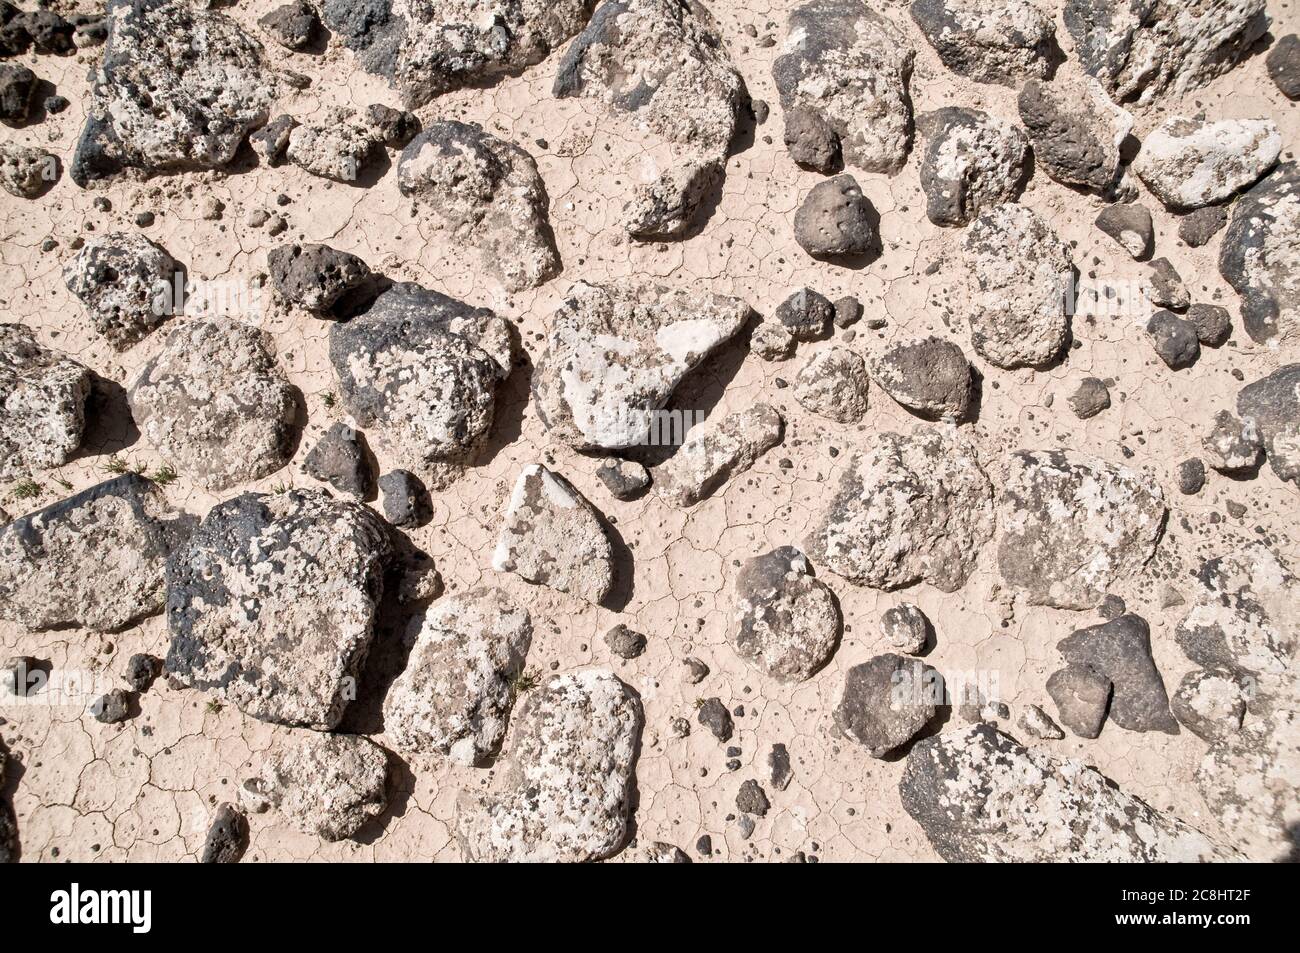 Basalt stones and rocks from ancient volcanoes cover the eastern desert, or 'black desert,' in the Badia region of the Hashemite Kingdom of Jordan. Stock Photo